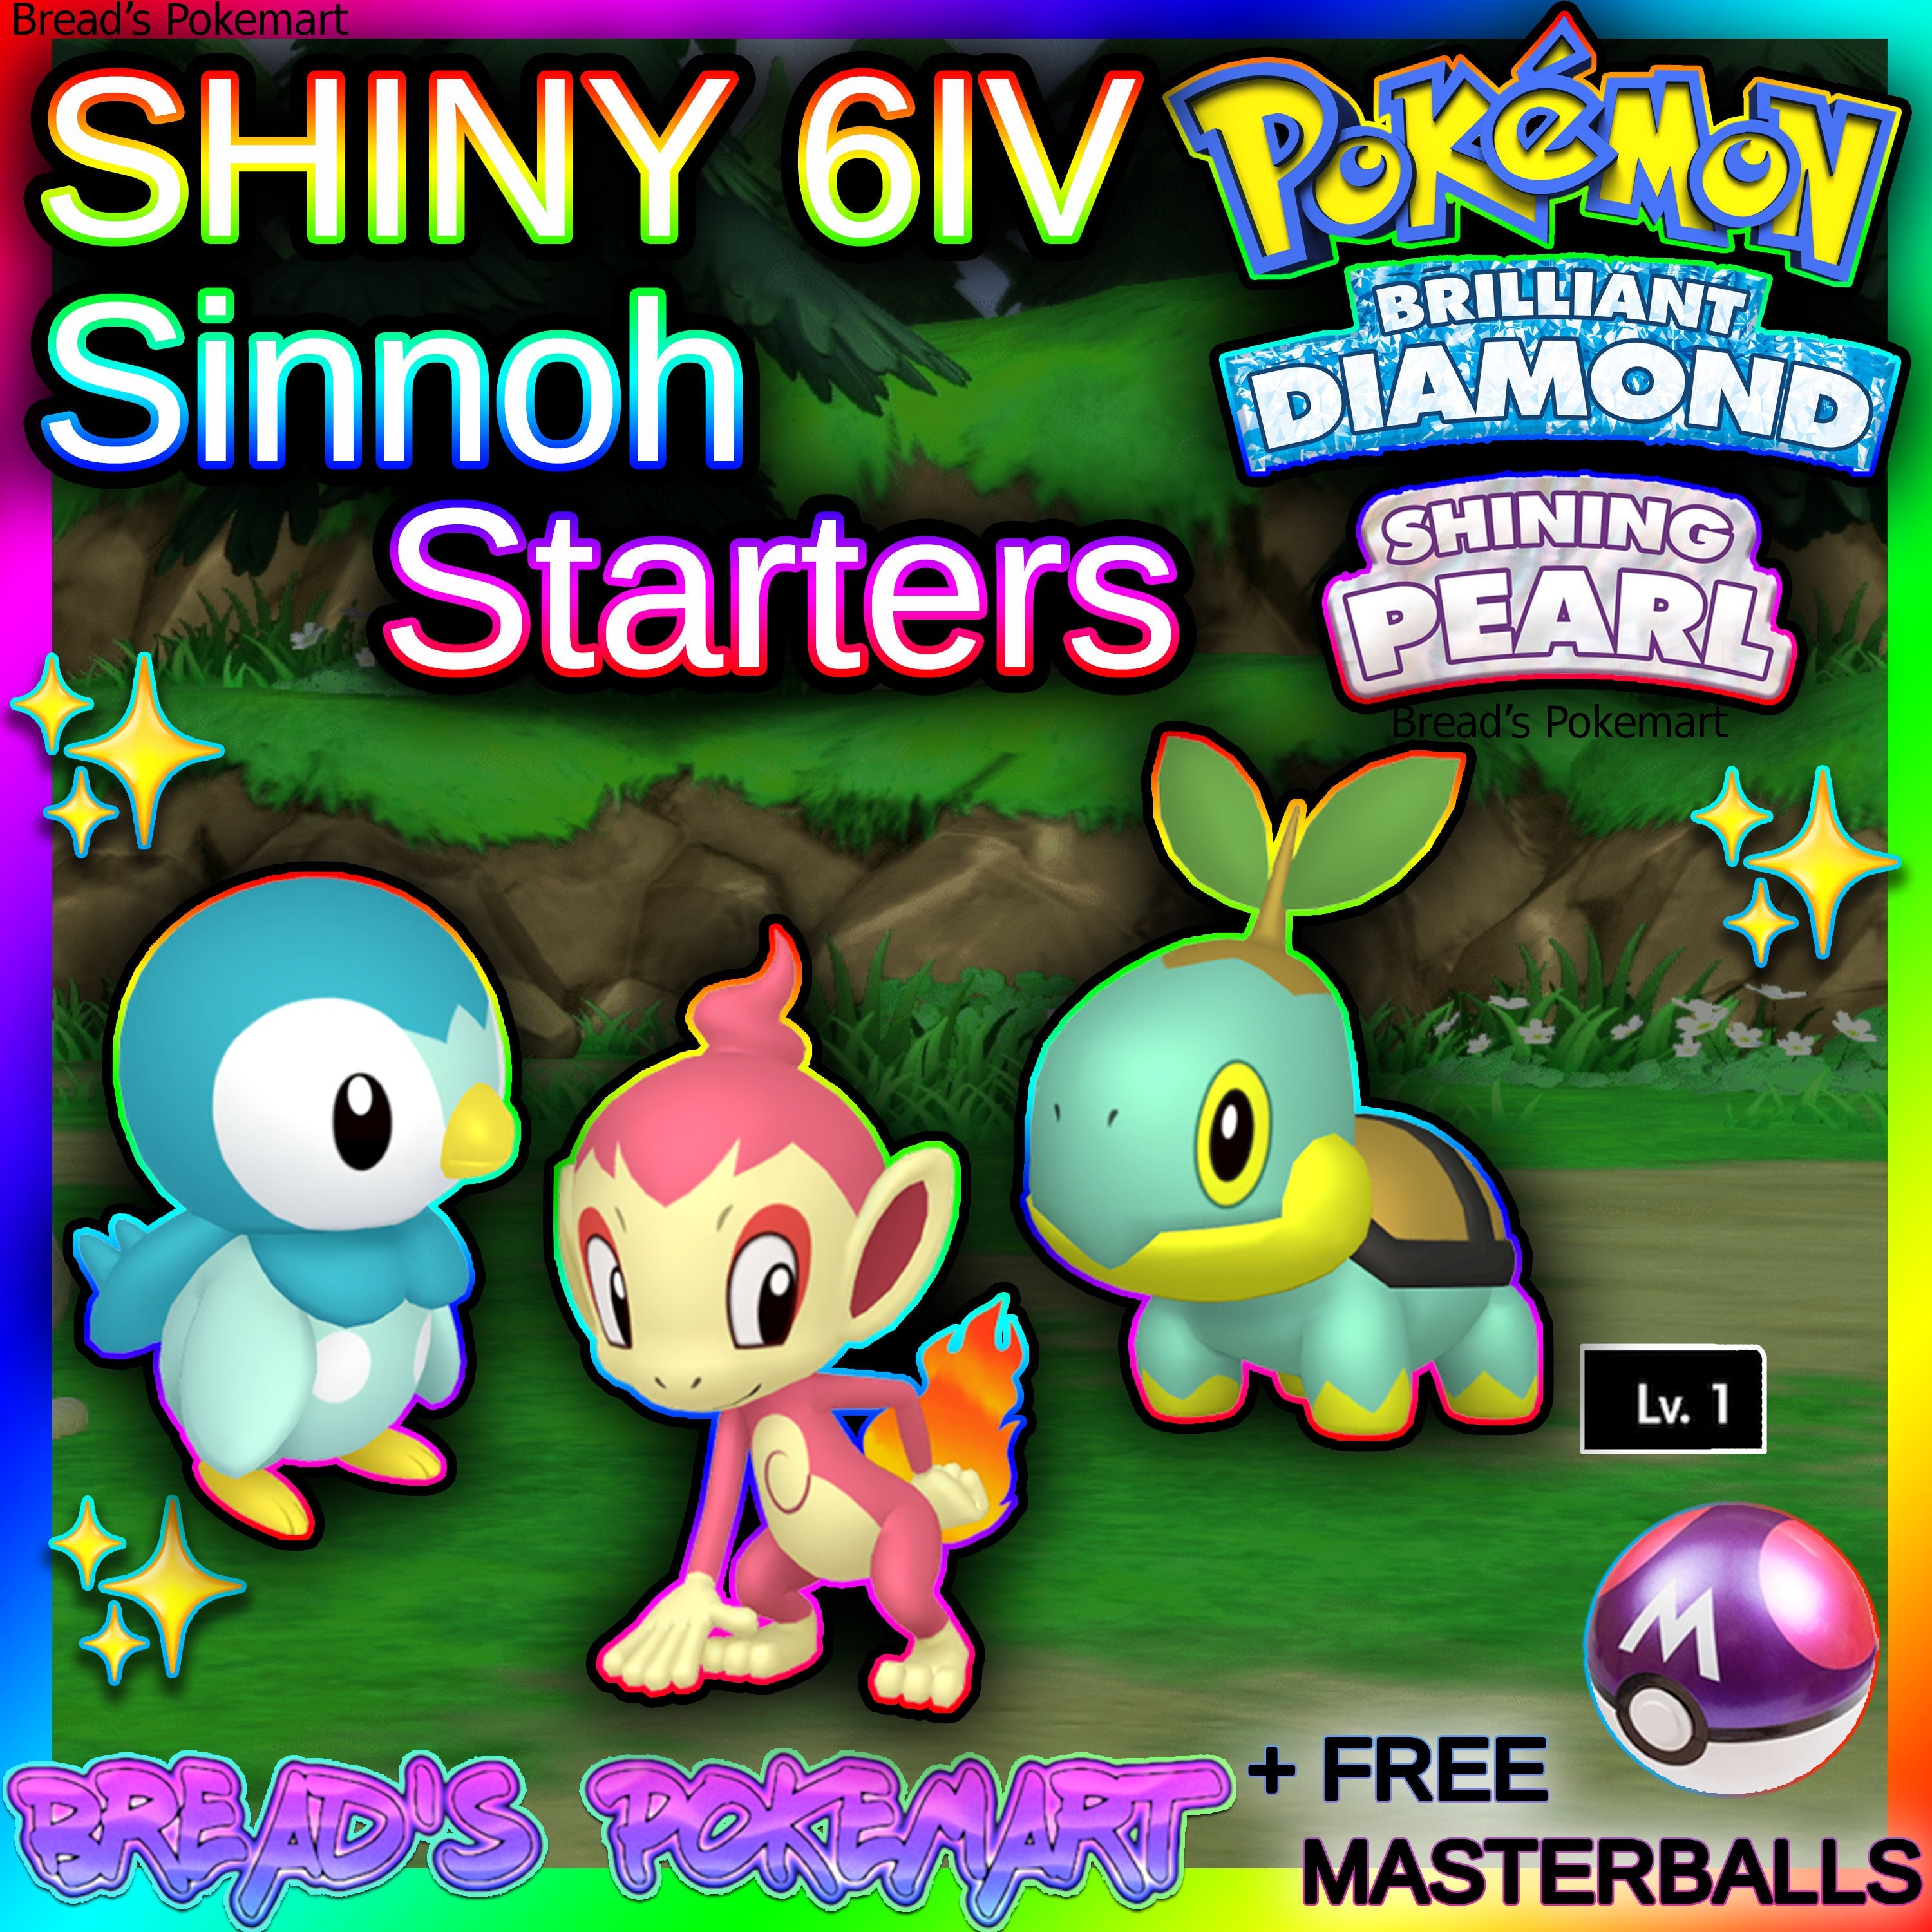 Print & Play Pokémon Brilliant Diamond Shining Pearl Craft - Play Nintendo.